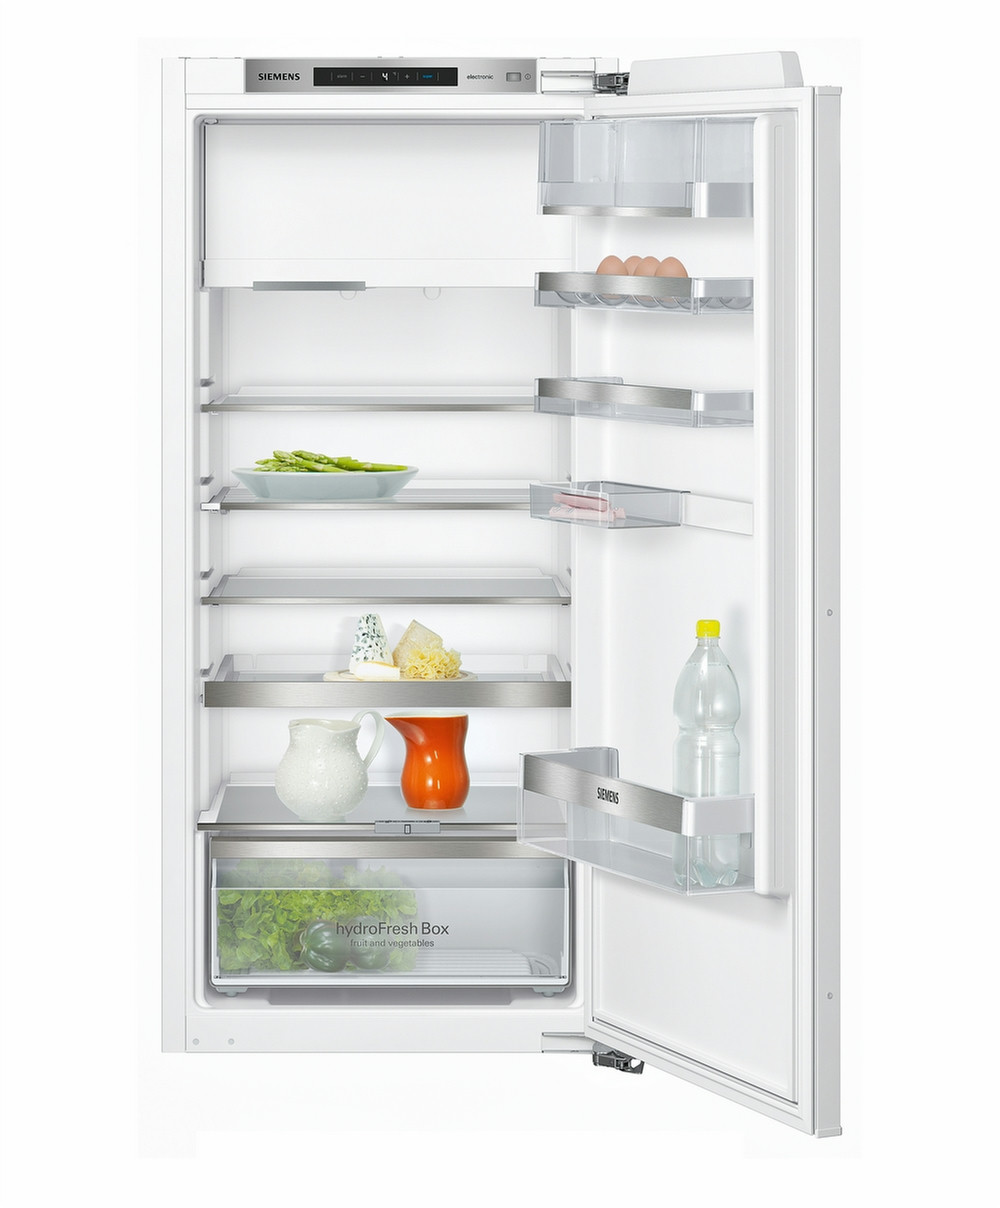 Холодильник Siemens iq500. Холодильник Siemens Siemens ki24f01. Холодильник Siemens Airflow. Холодильник Siemens расположение полок. Купить холодильник сименс